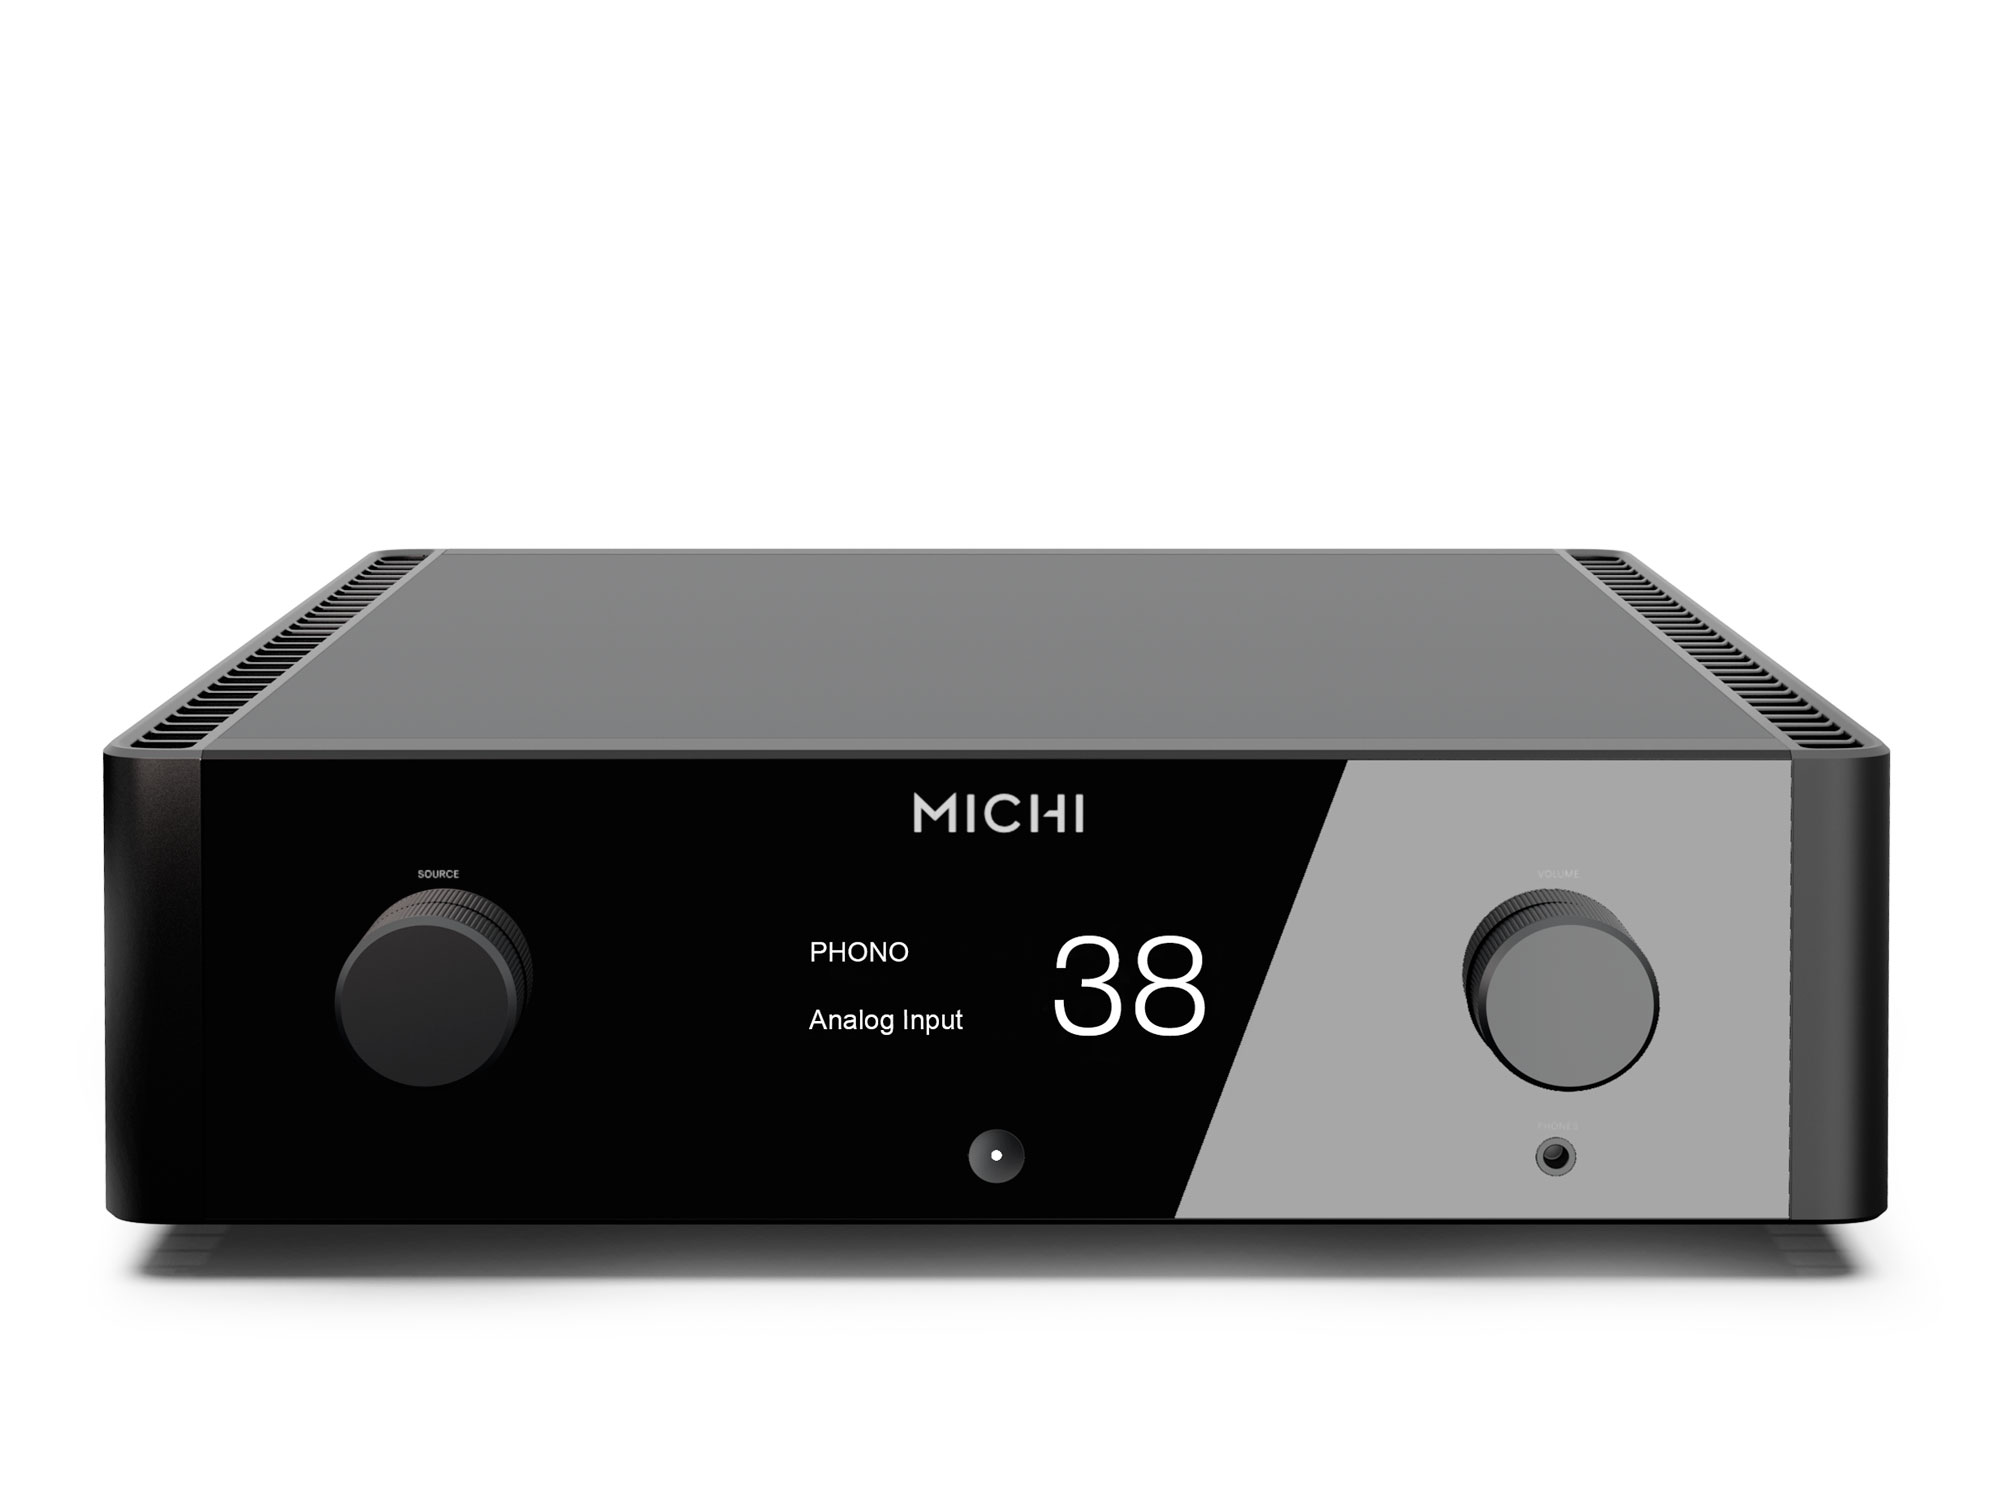 MICHI X3 (Black)
(Demo) สินค้าตัวโชว์ราคาพิเศษ